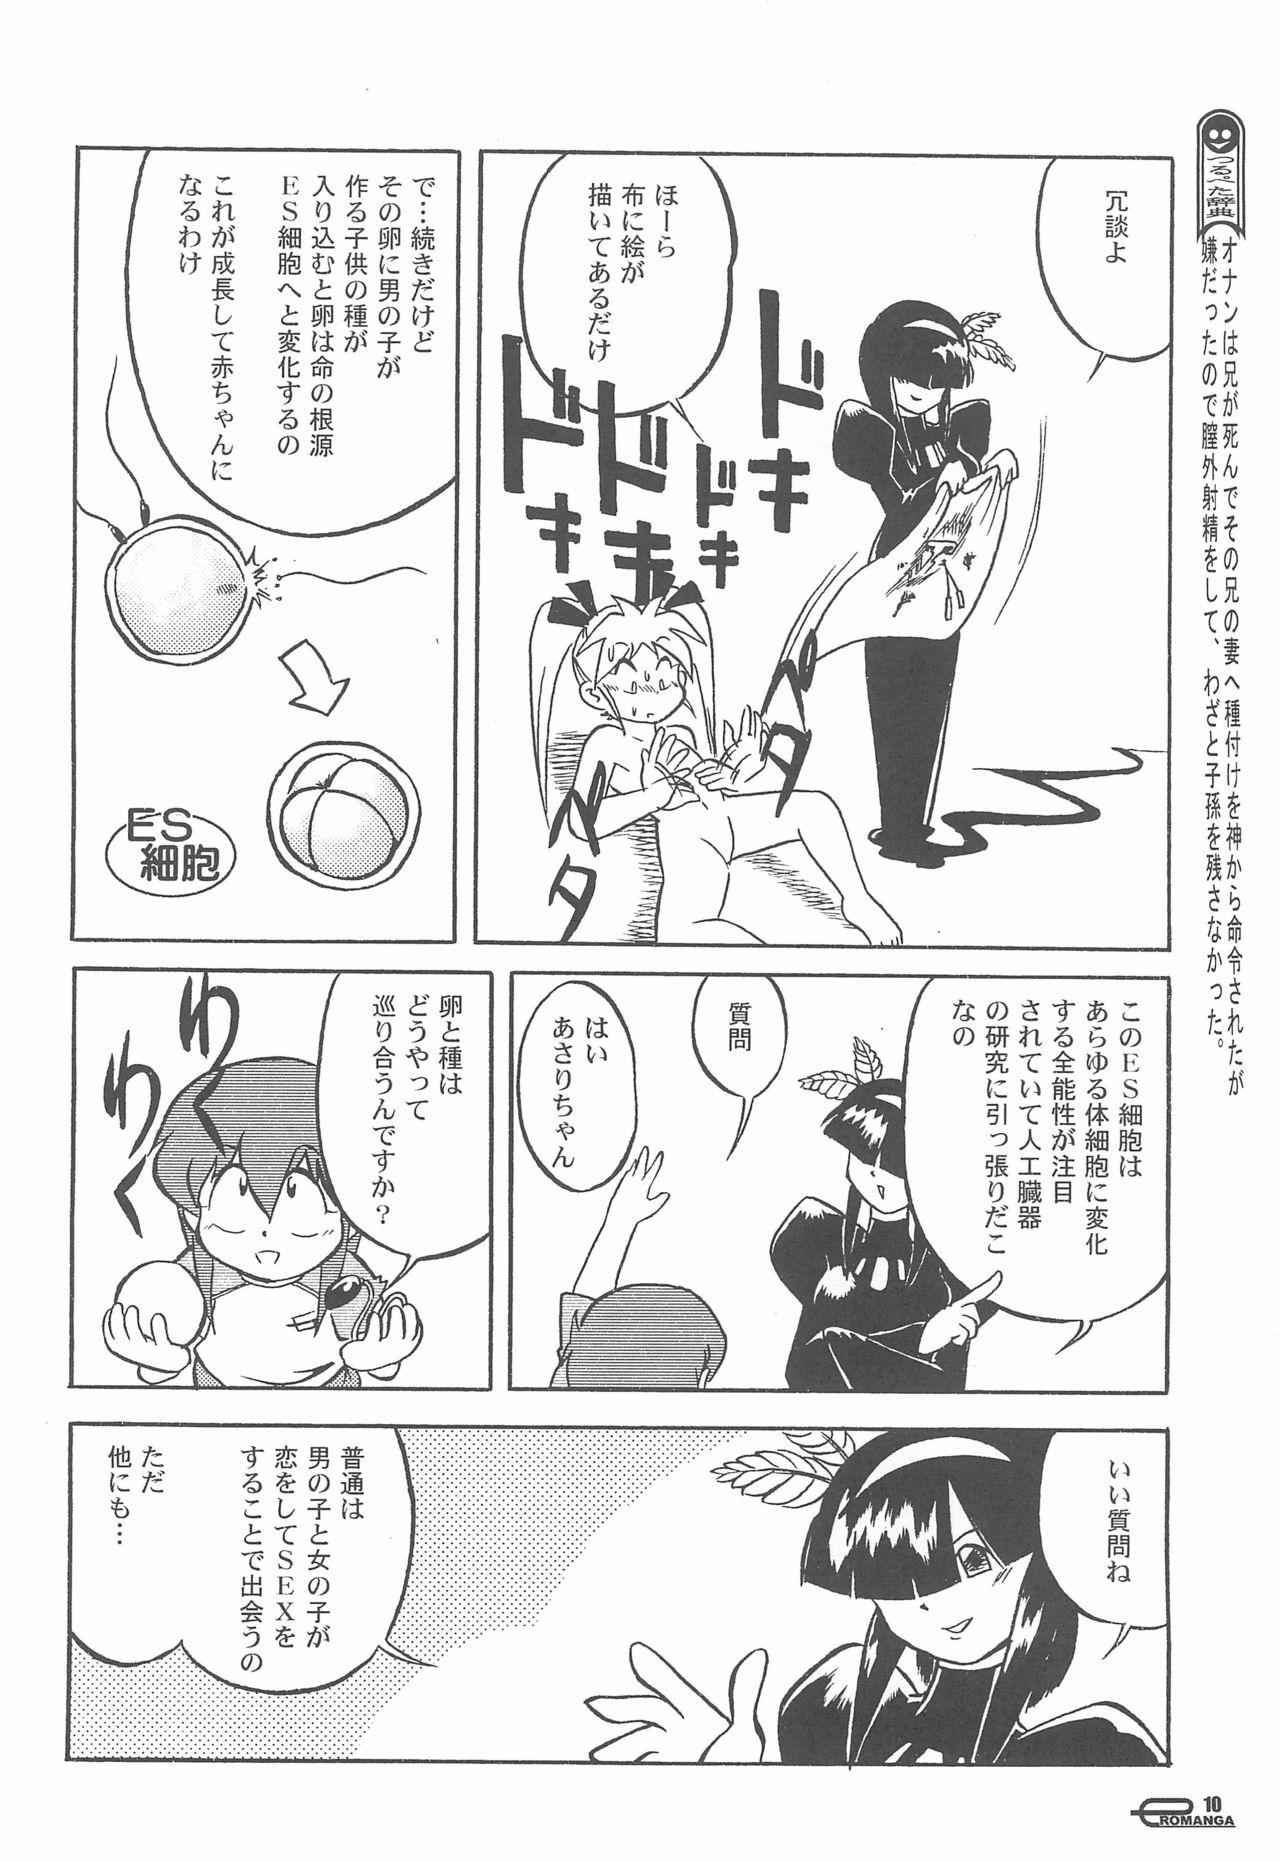 Manga Science Onna no ko no Himitsu 11